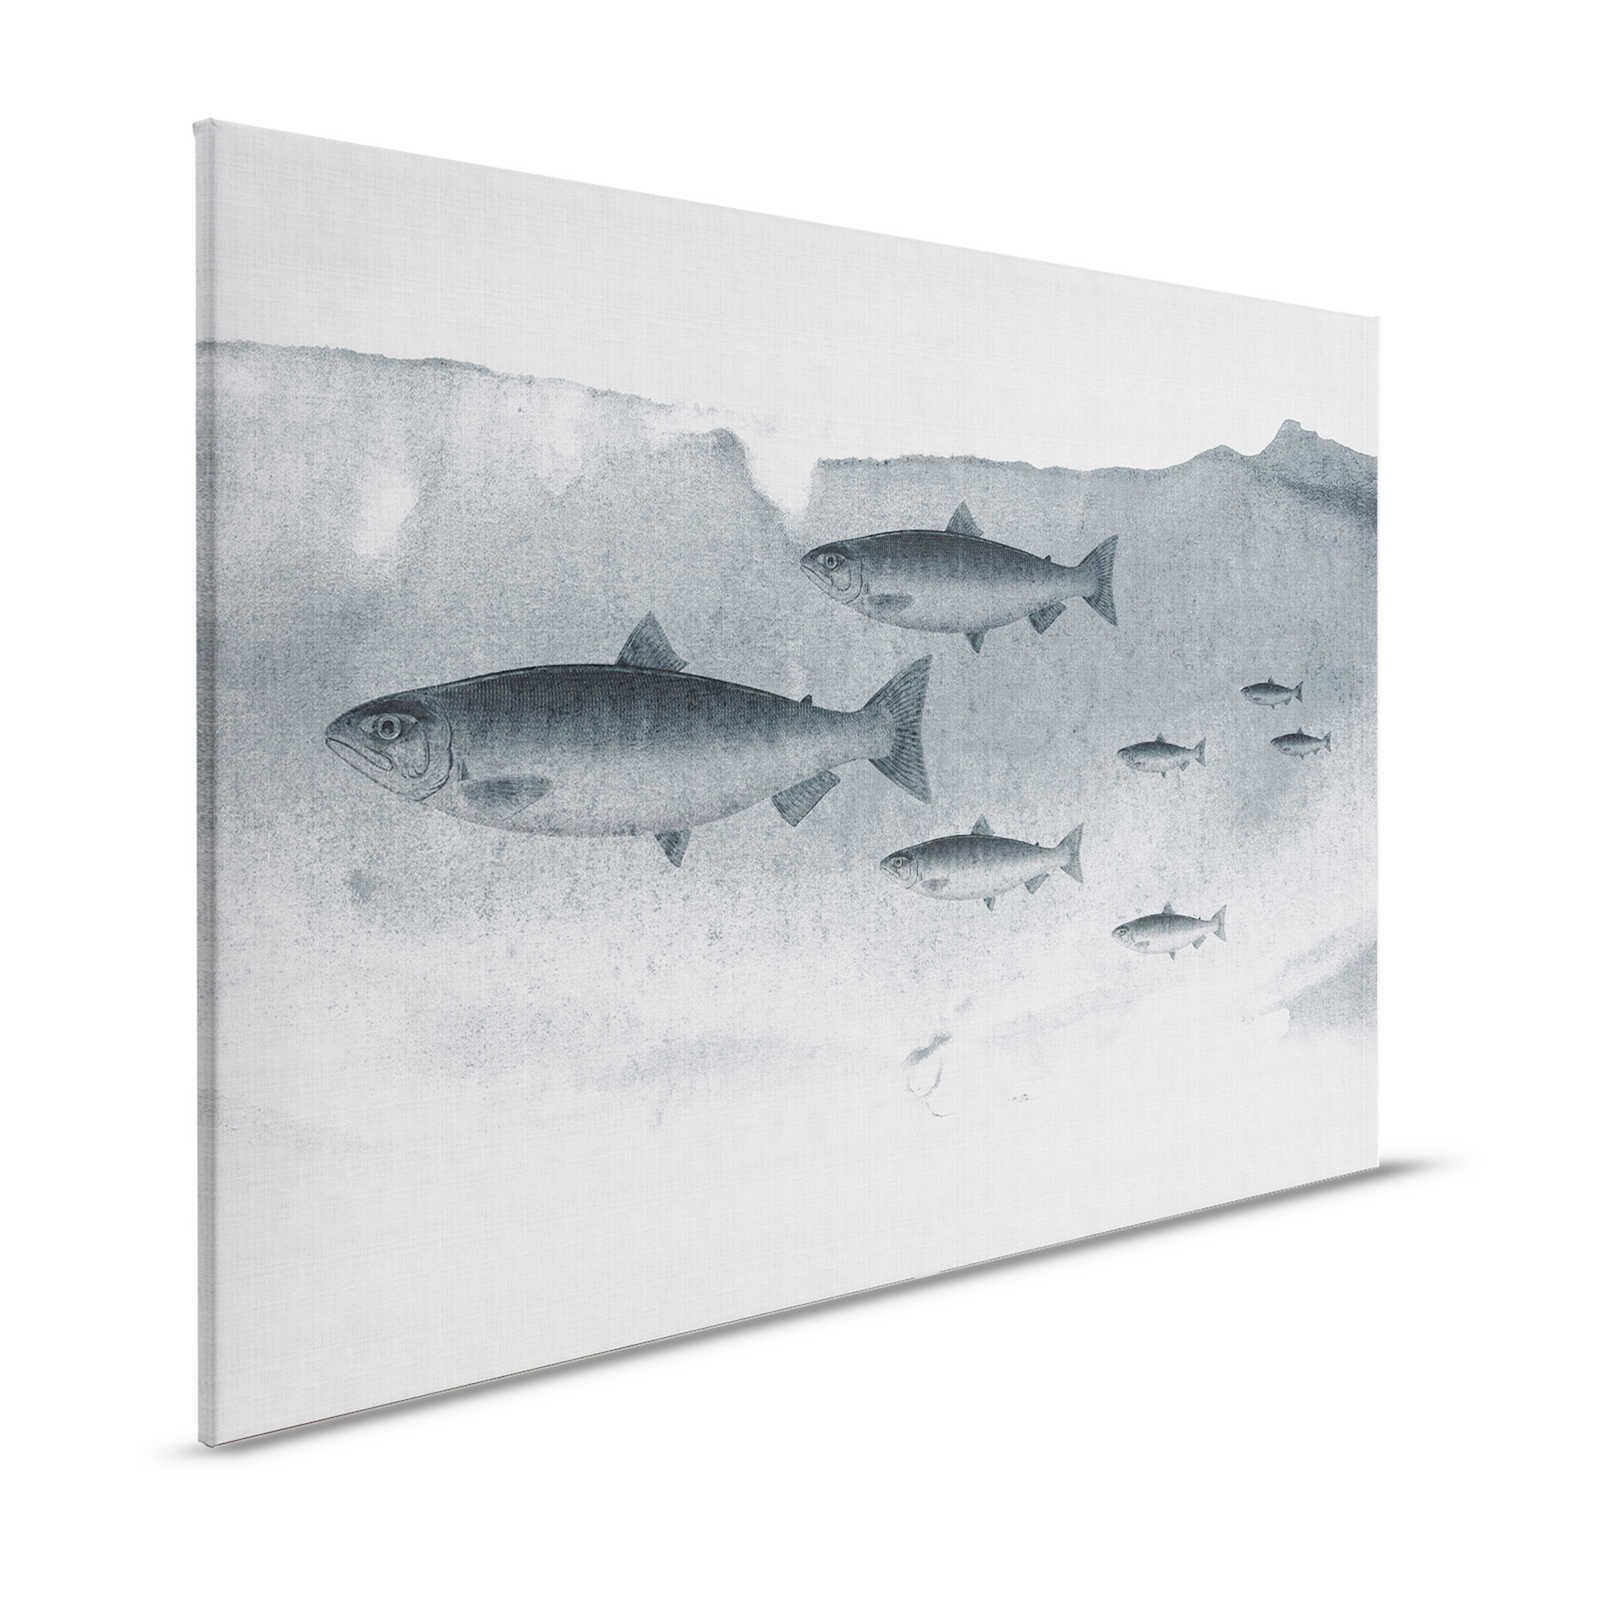 Into the blue 3 - Acquerello di pesce in grigio come quadro su tela - 1,20 m x 0,80 m
